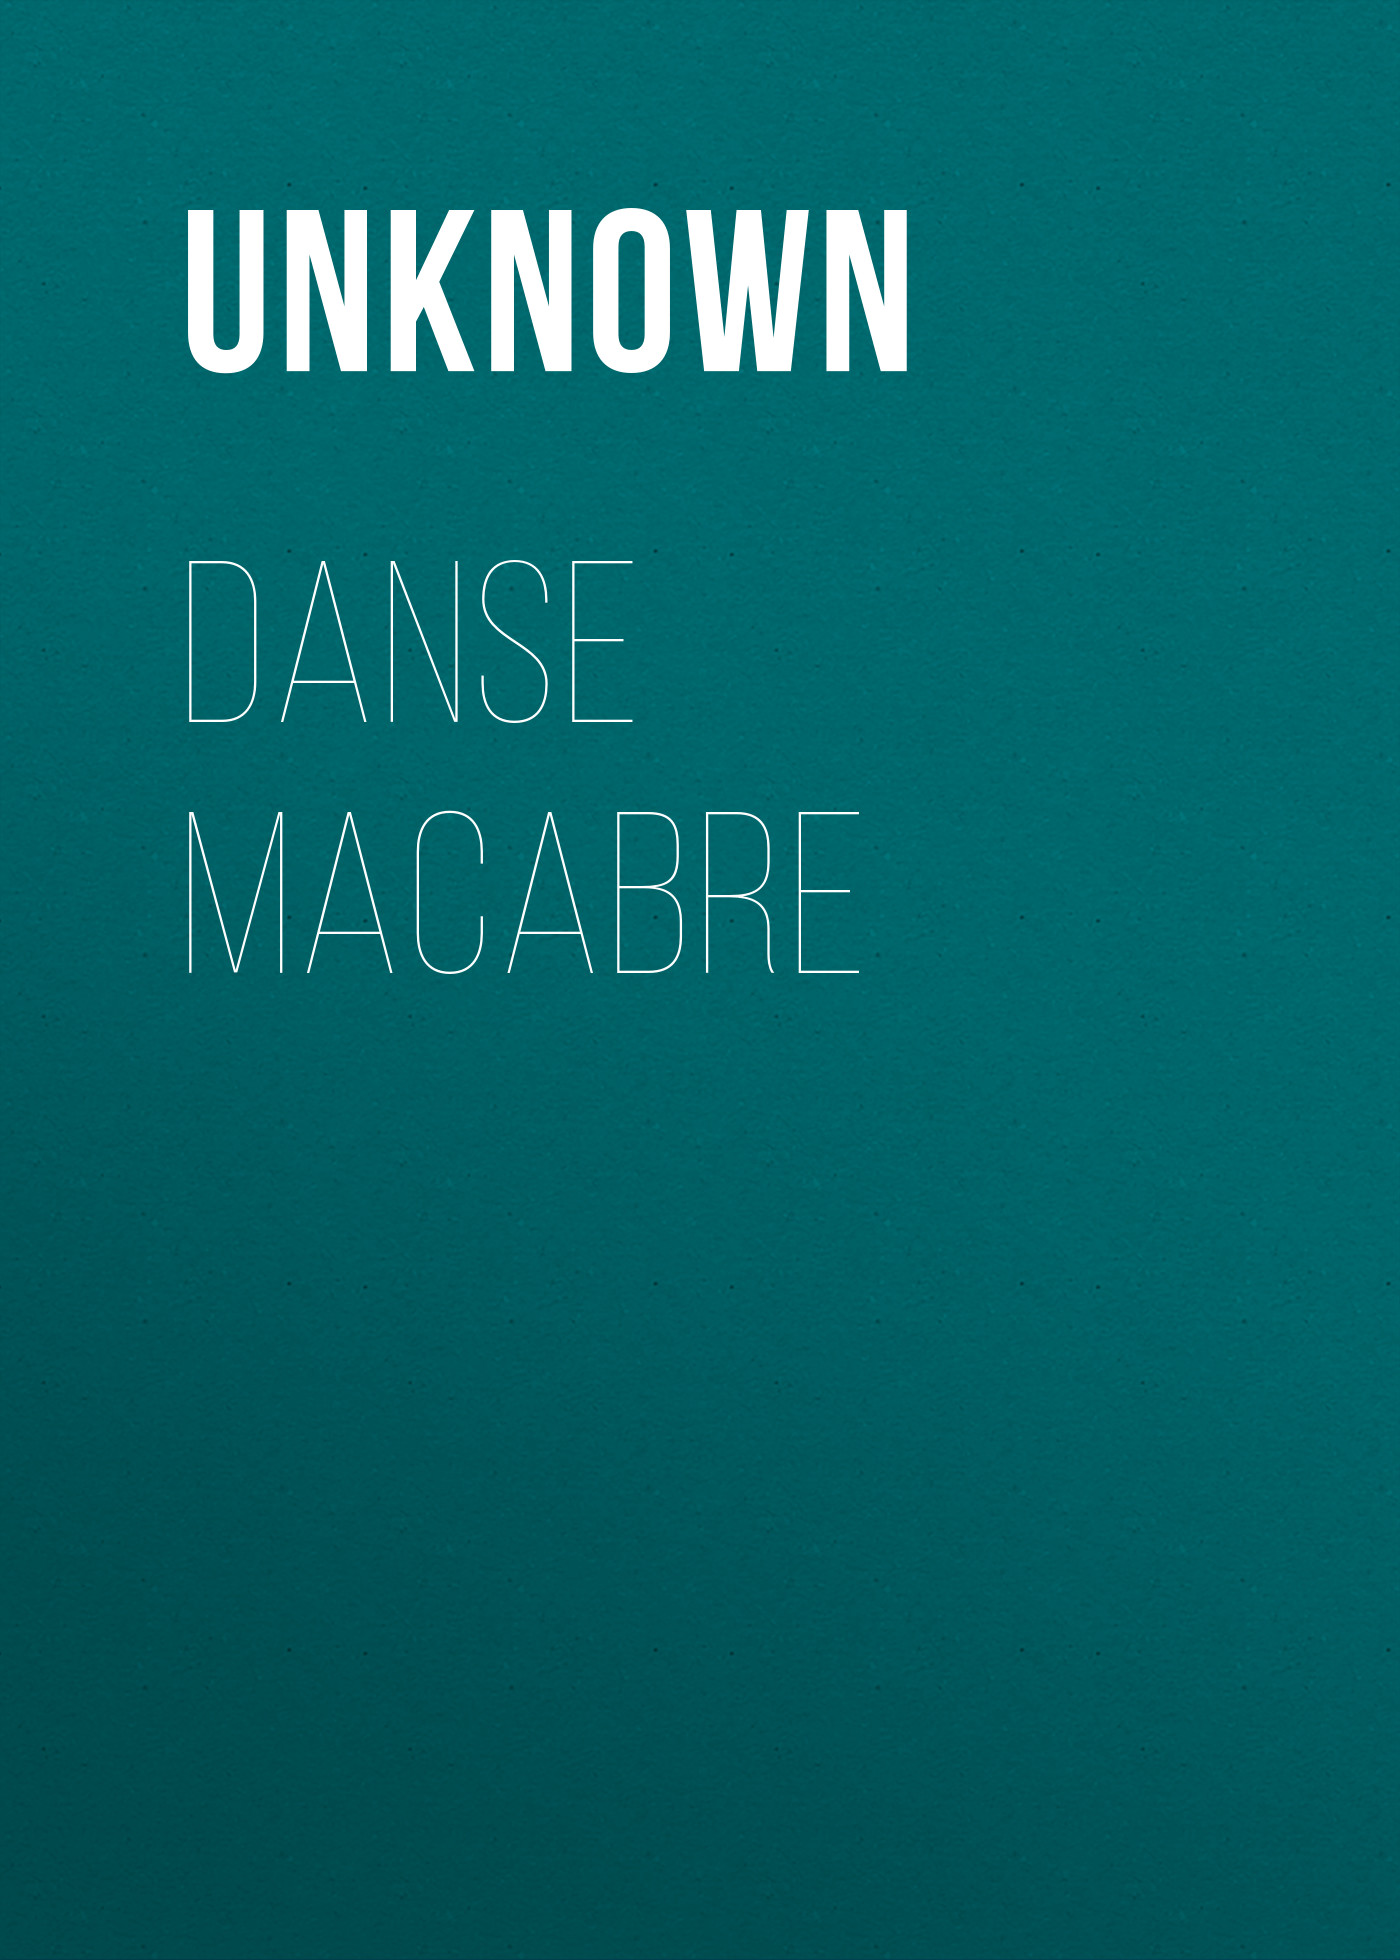 Книга Danse macabre из серии , созданная Unknown Unknown, может относится к жанру Зарубежные стихи, Поэзия, Зарубежная старинная литература, Зарубежная классика. Стоимость электронной книги Danse macabre с идентификатором 35495383 составляет 0 руб.